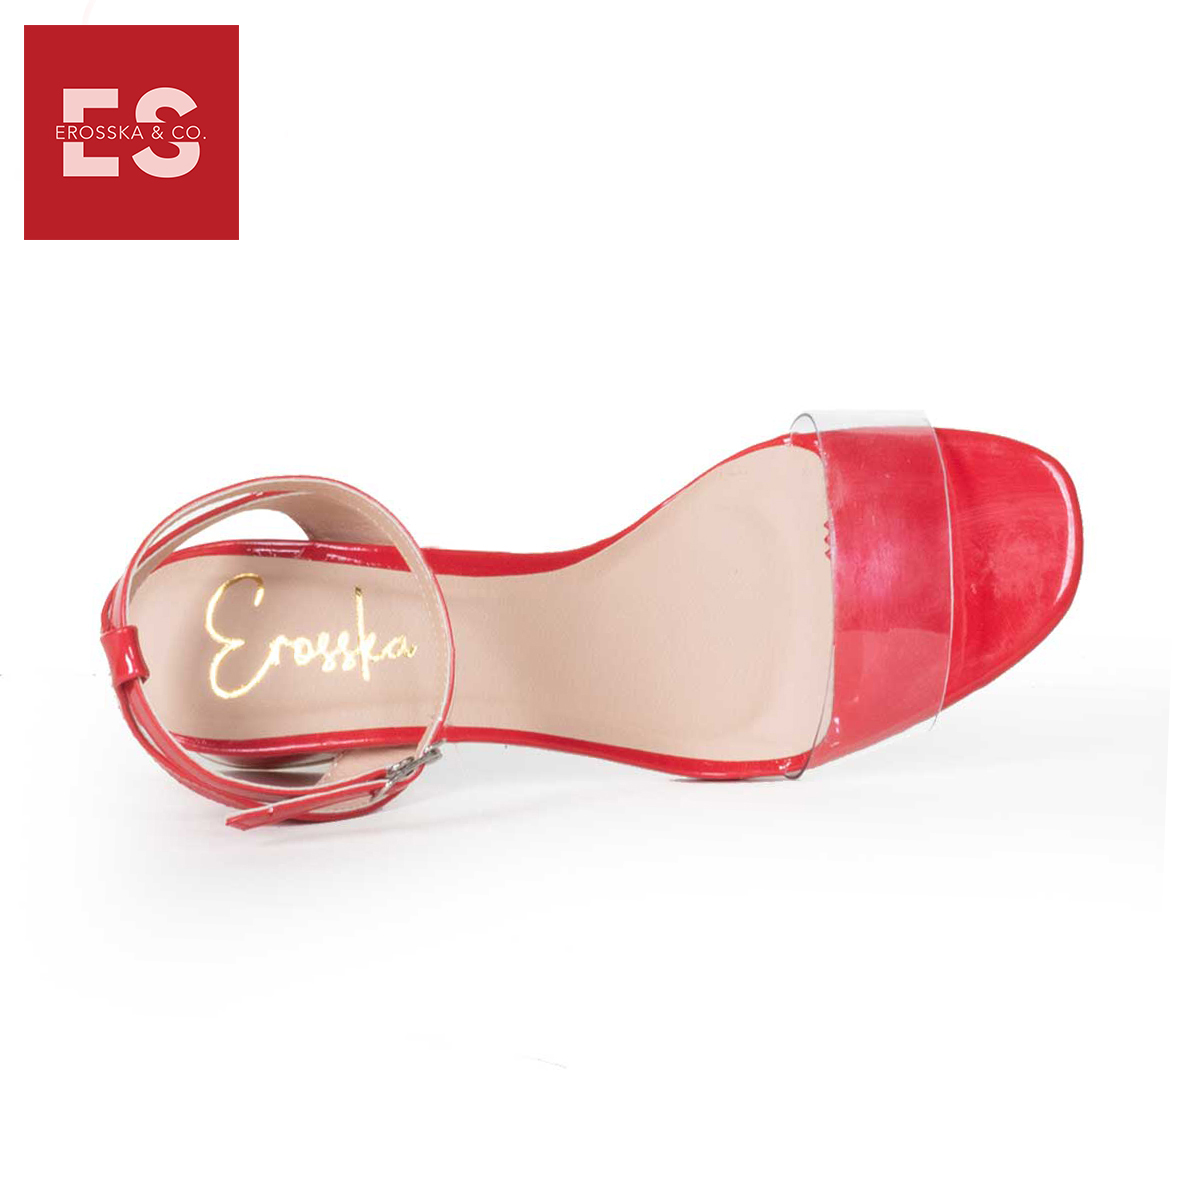 Giày Cao Gót Thời Trang Phối Quai Trong Đế Vuông Erosska EM015 (Màu Đỏ)